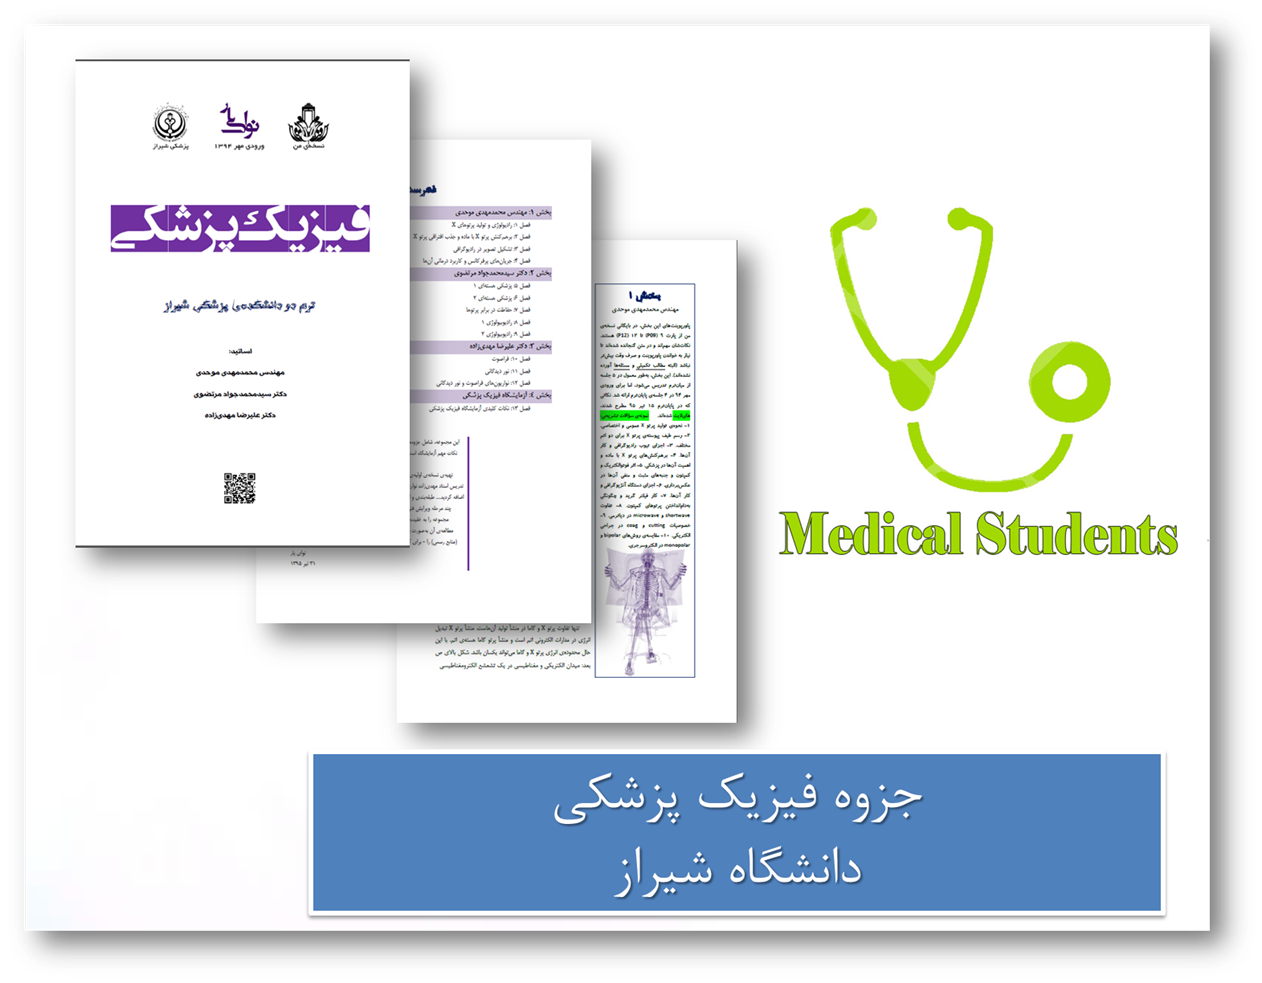 جزوه فیزیک پزشکی دانشگاه شیراز